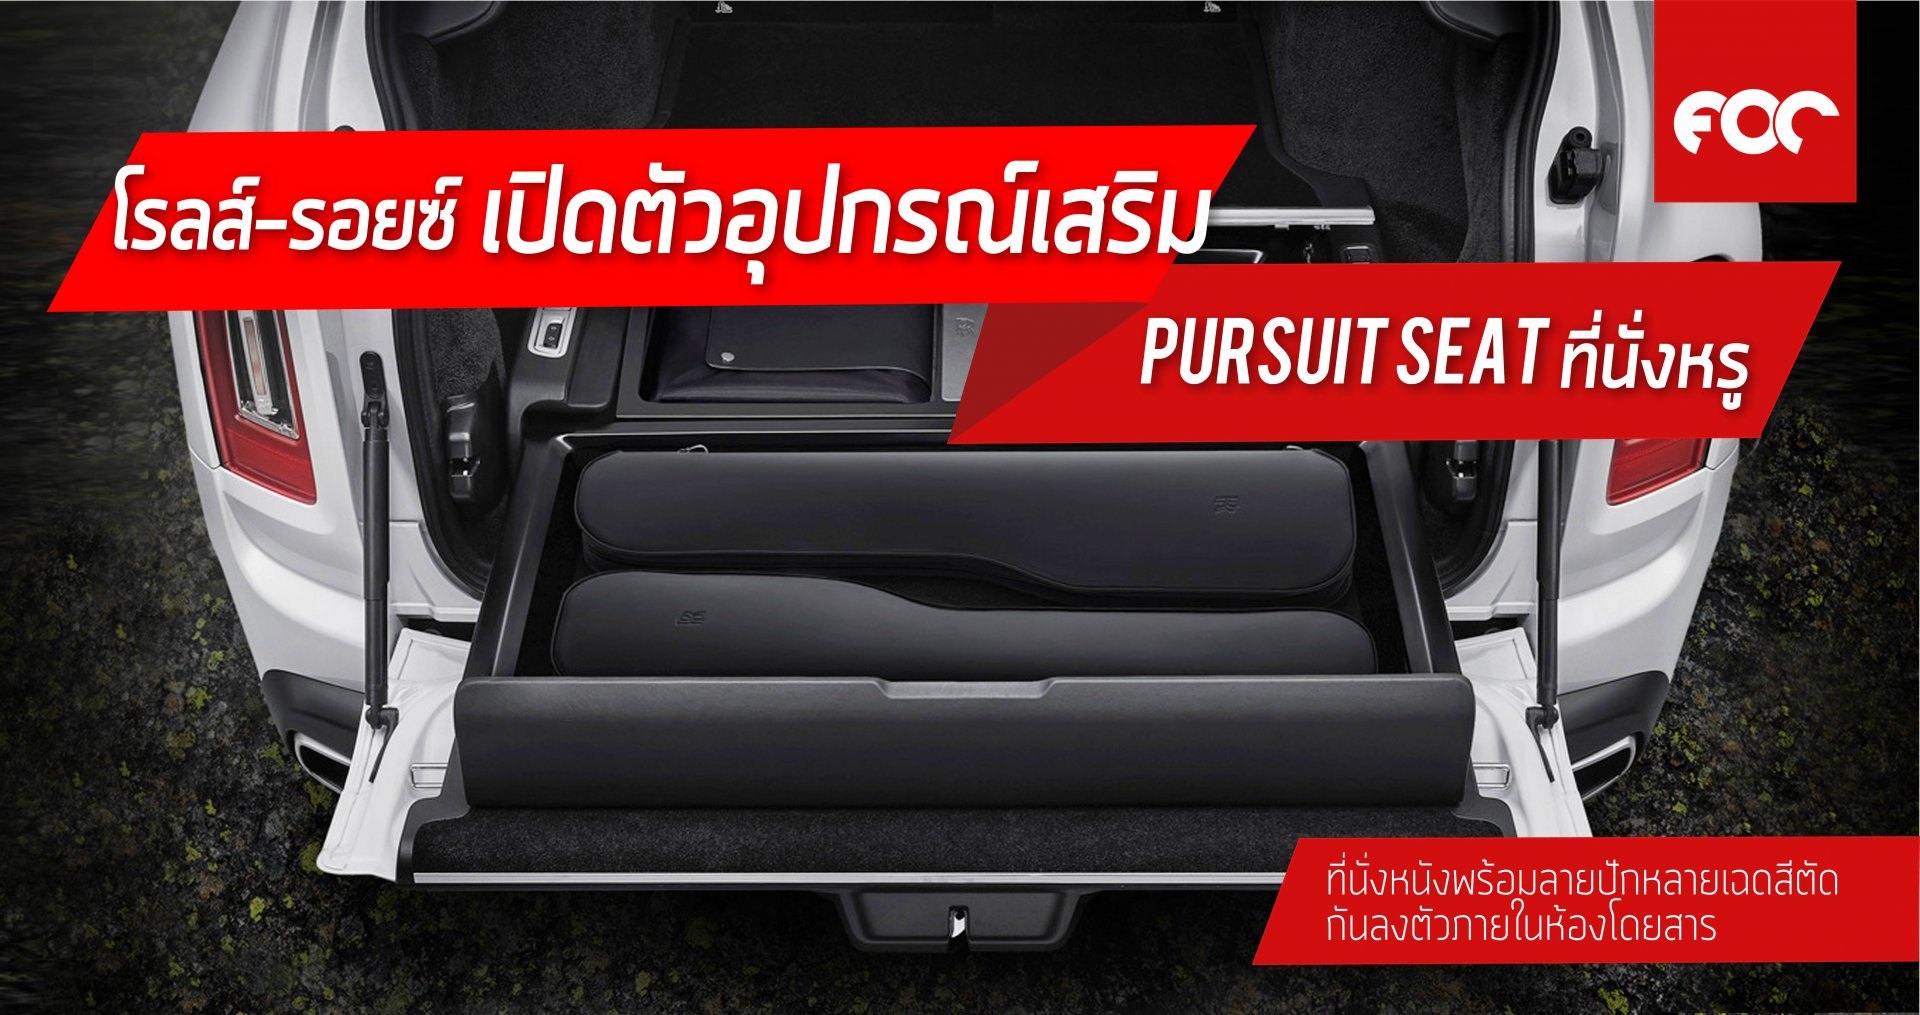 โรลส์-รอยซ์ เปิดตัวอุปกรณ์เสริมใหม่  ที่นั่งหรู ‘PURSUIT SEAT’  